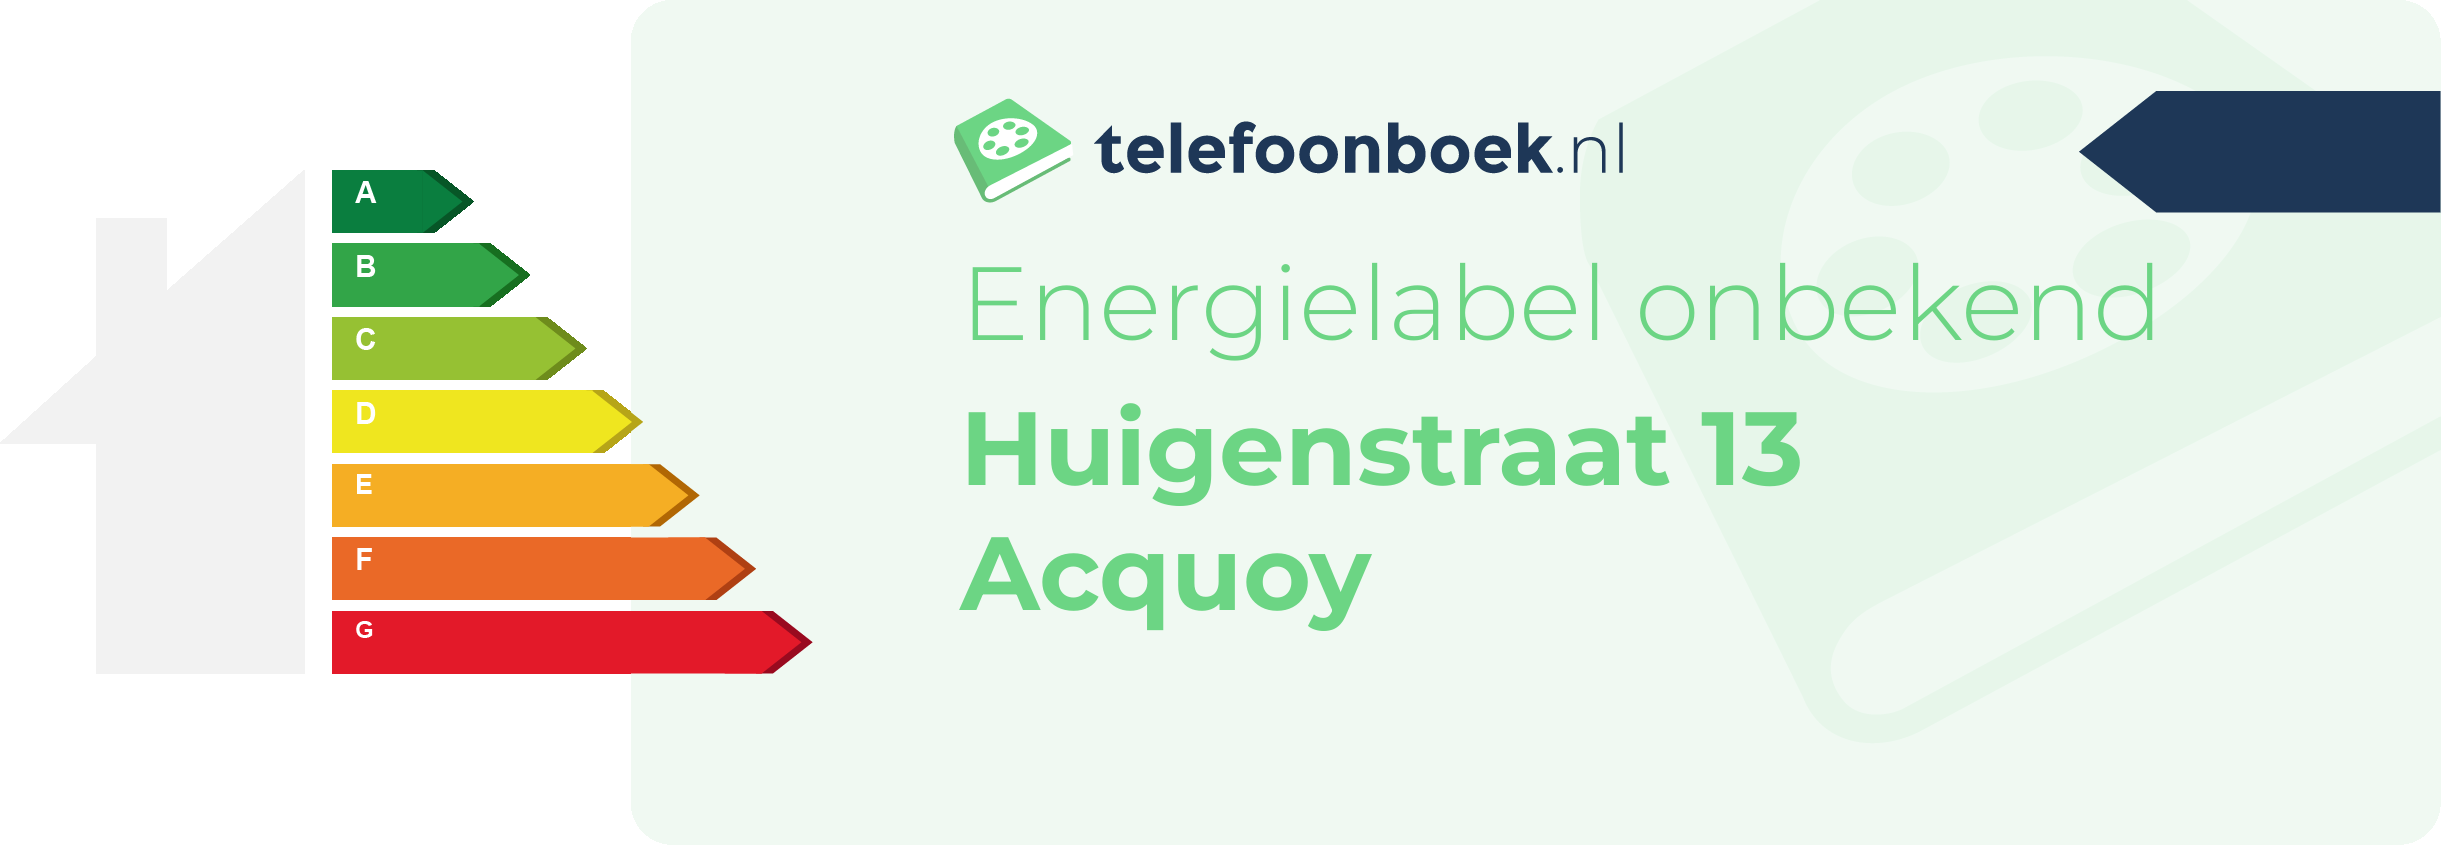 Energielabel Huigenstraat 13 Acquoy